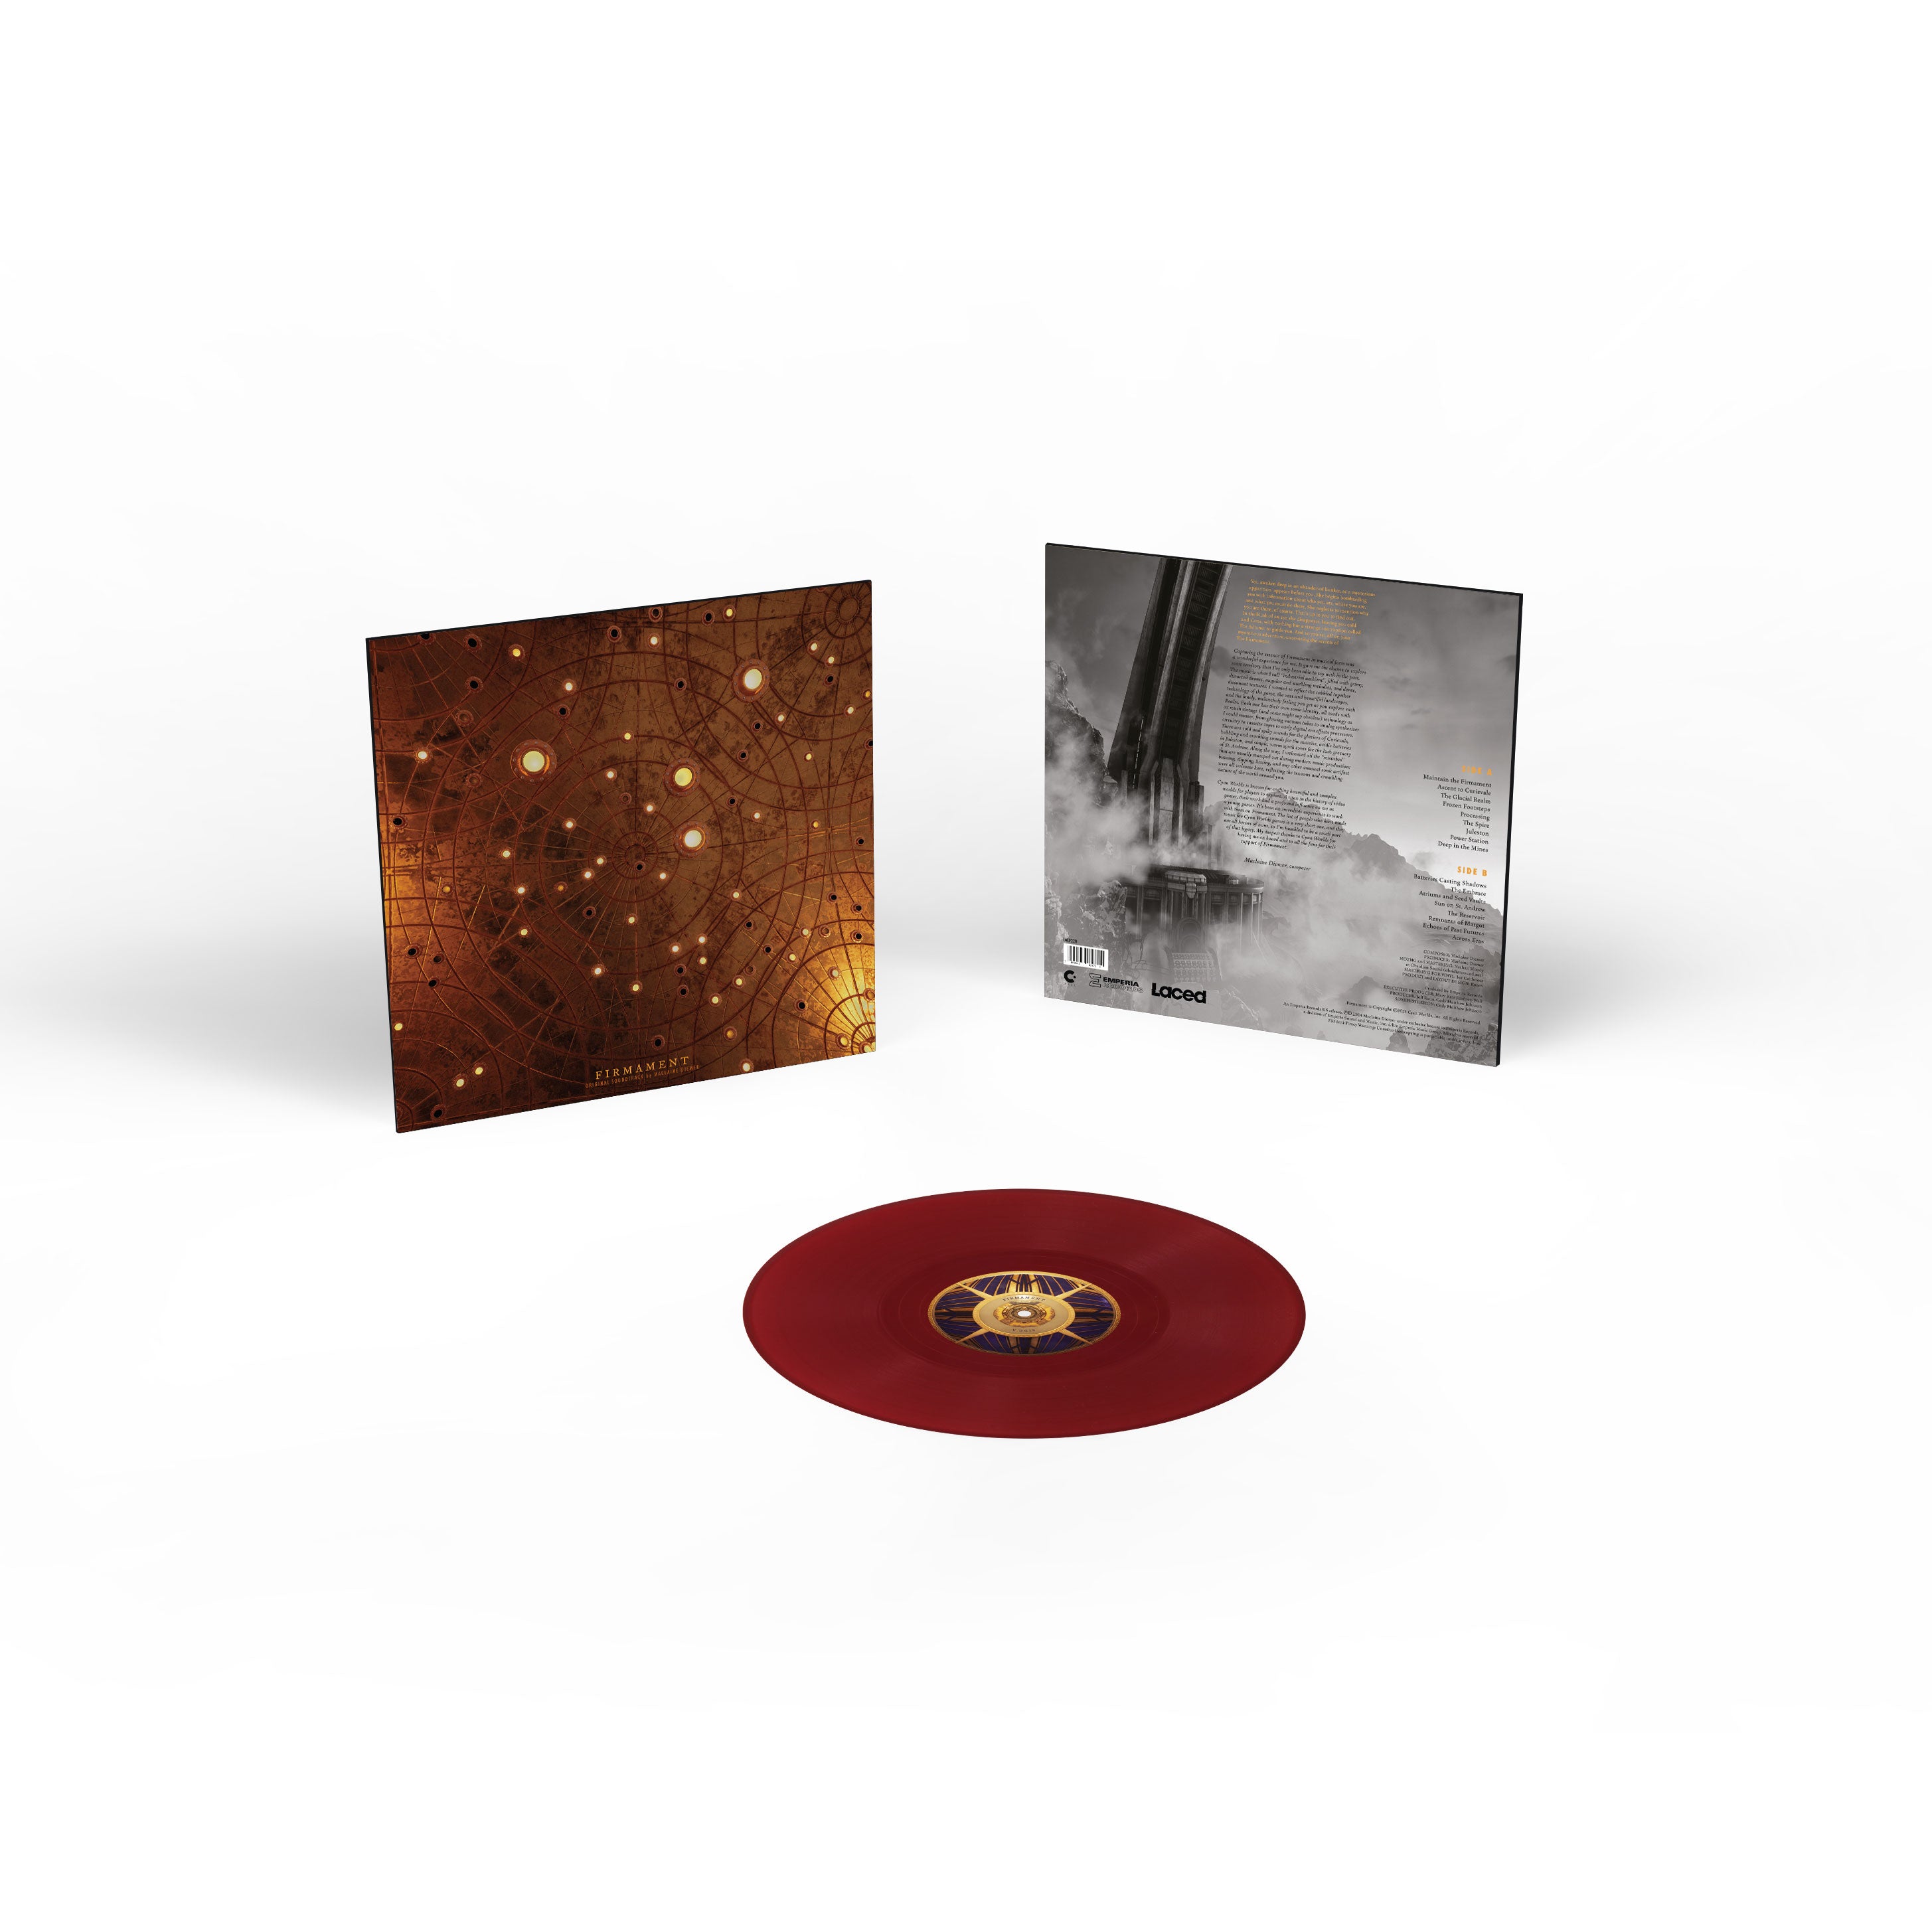 Maclaine Diemer - Firmament (OST): Limited Deep Red Vinyl LP